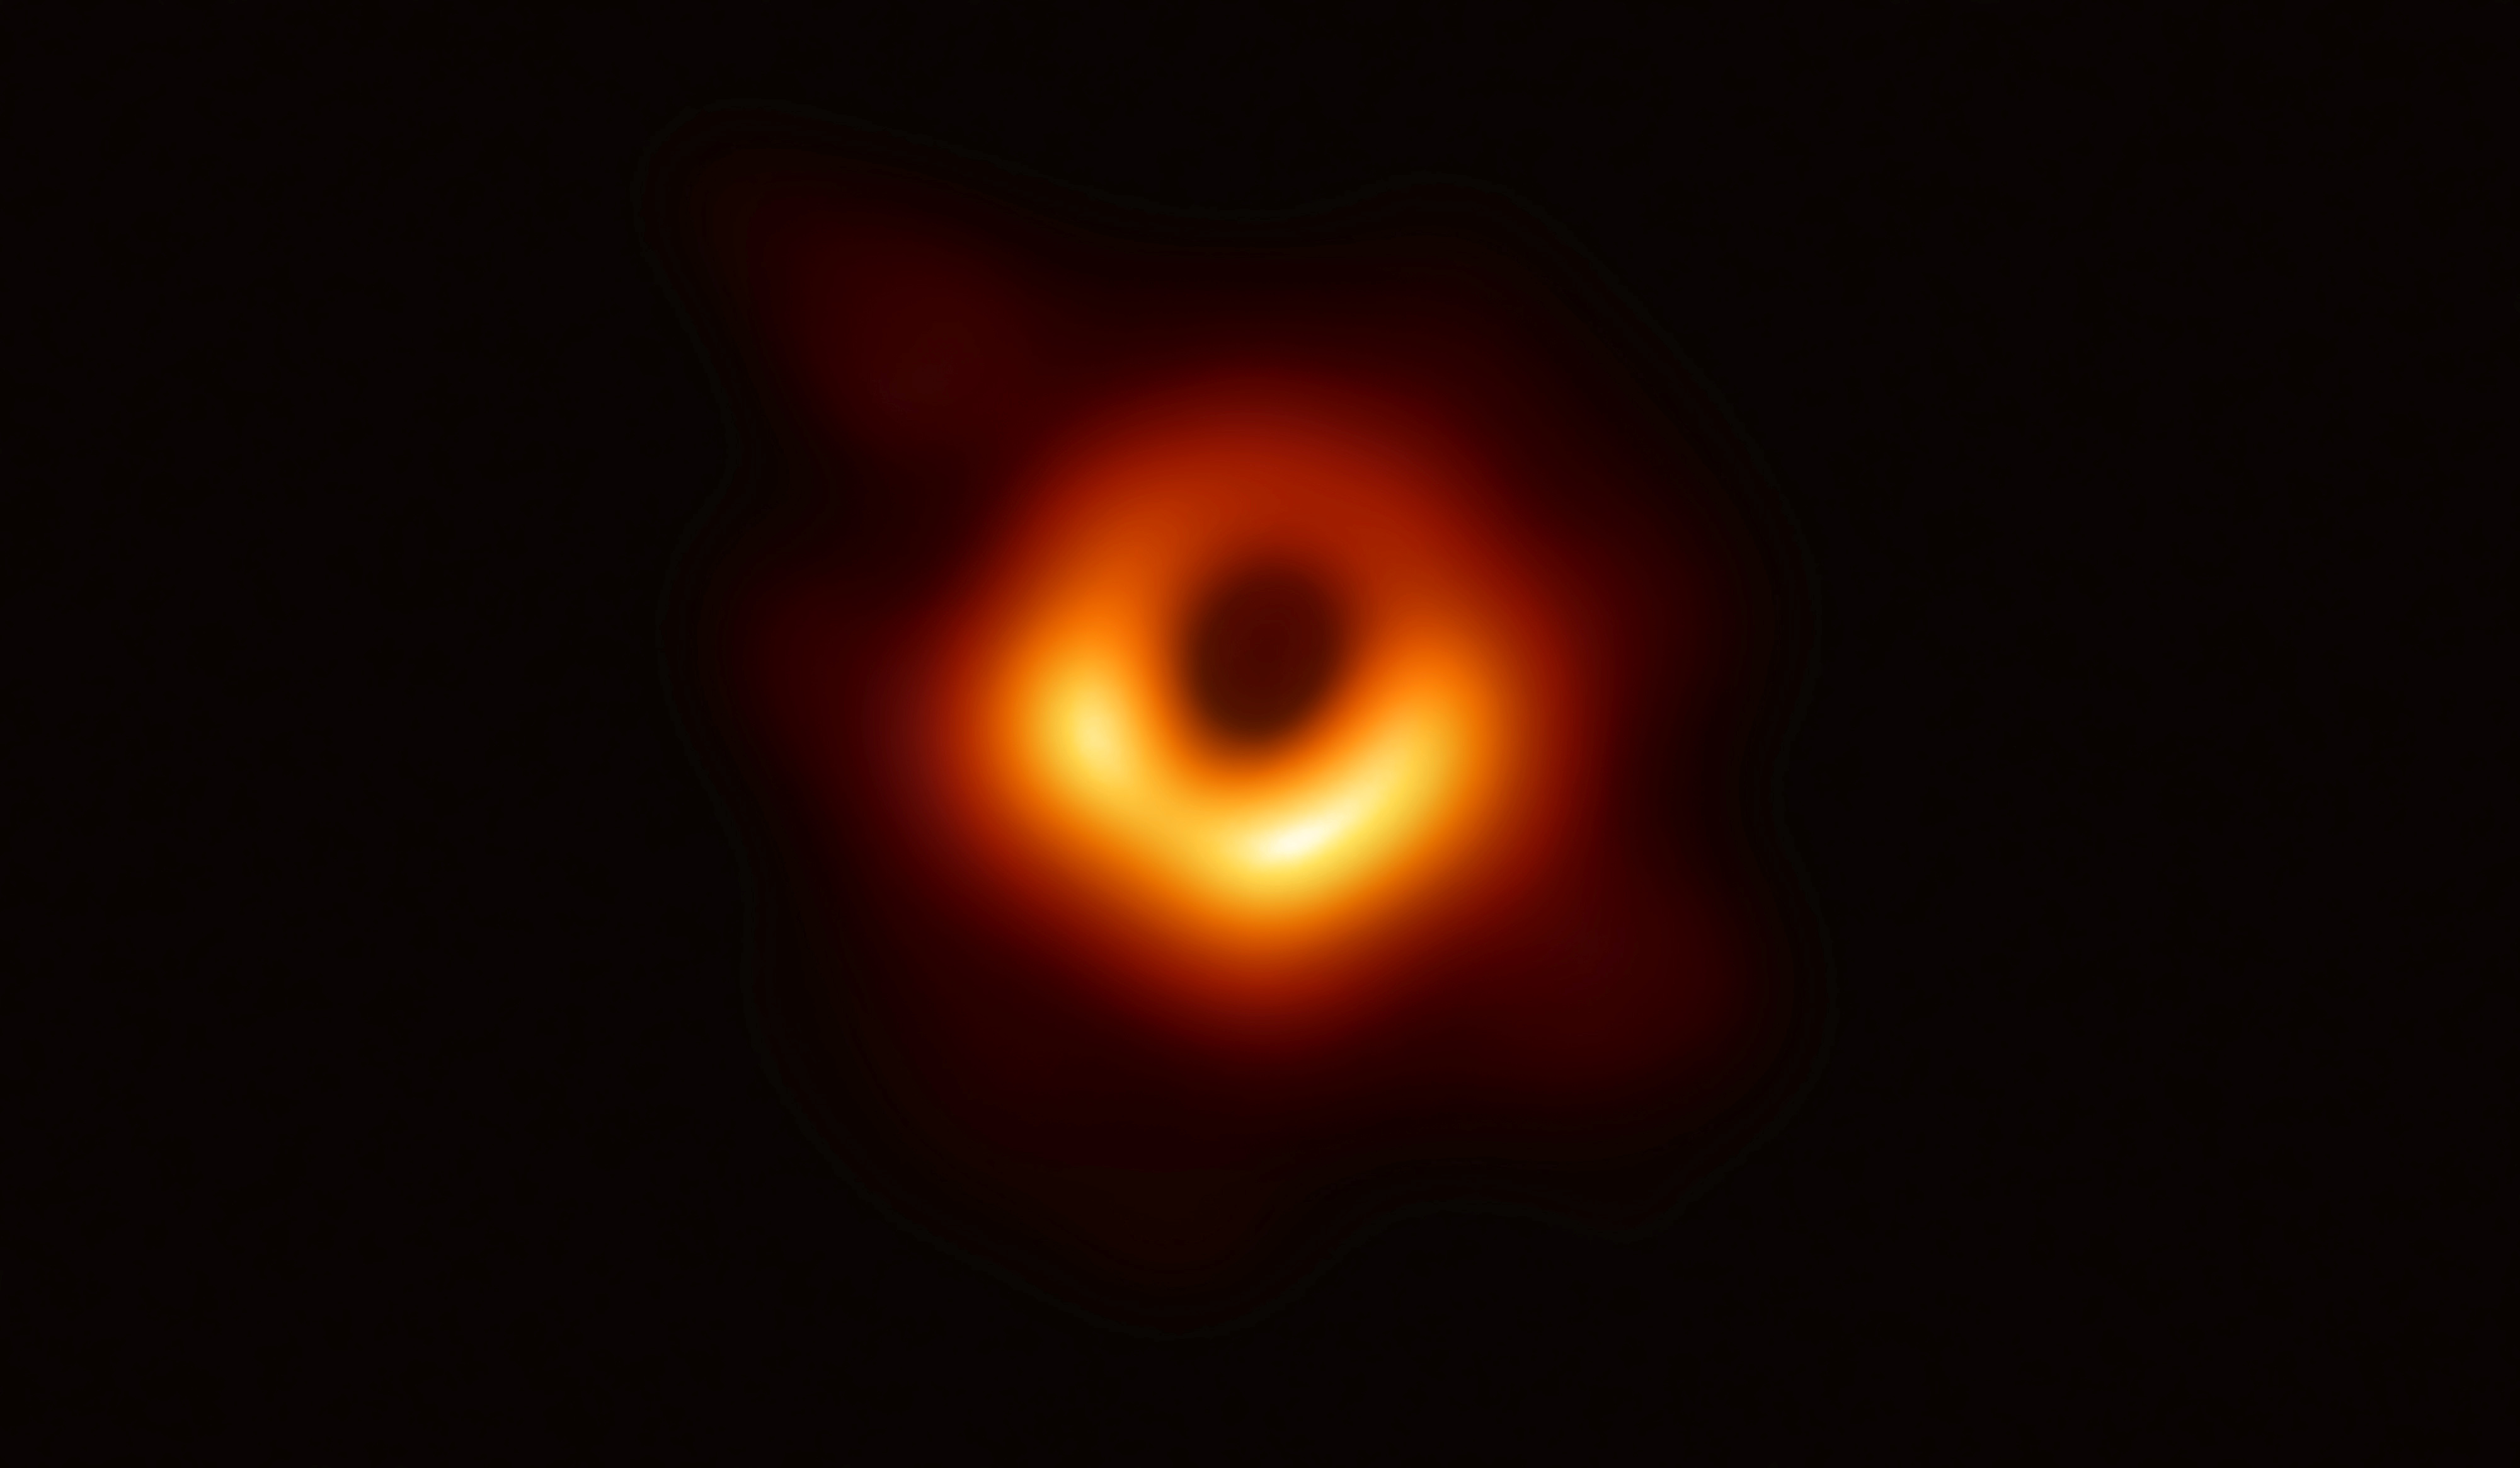 أول صورة حقيقية للثقب الأسود